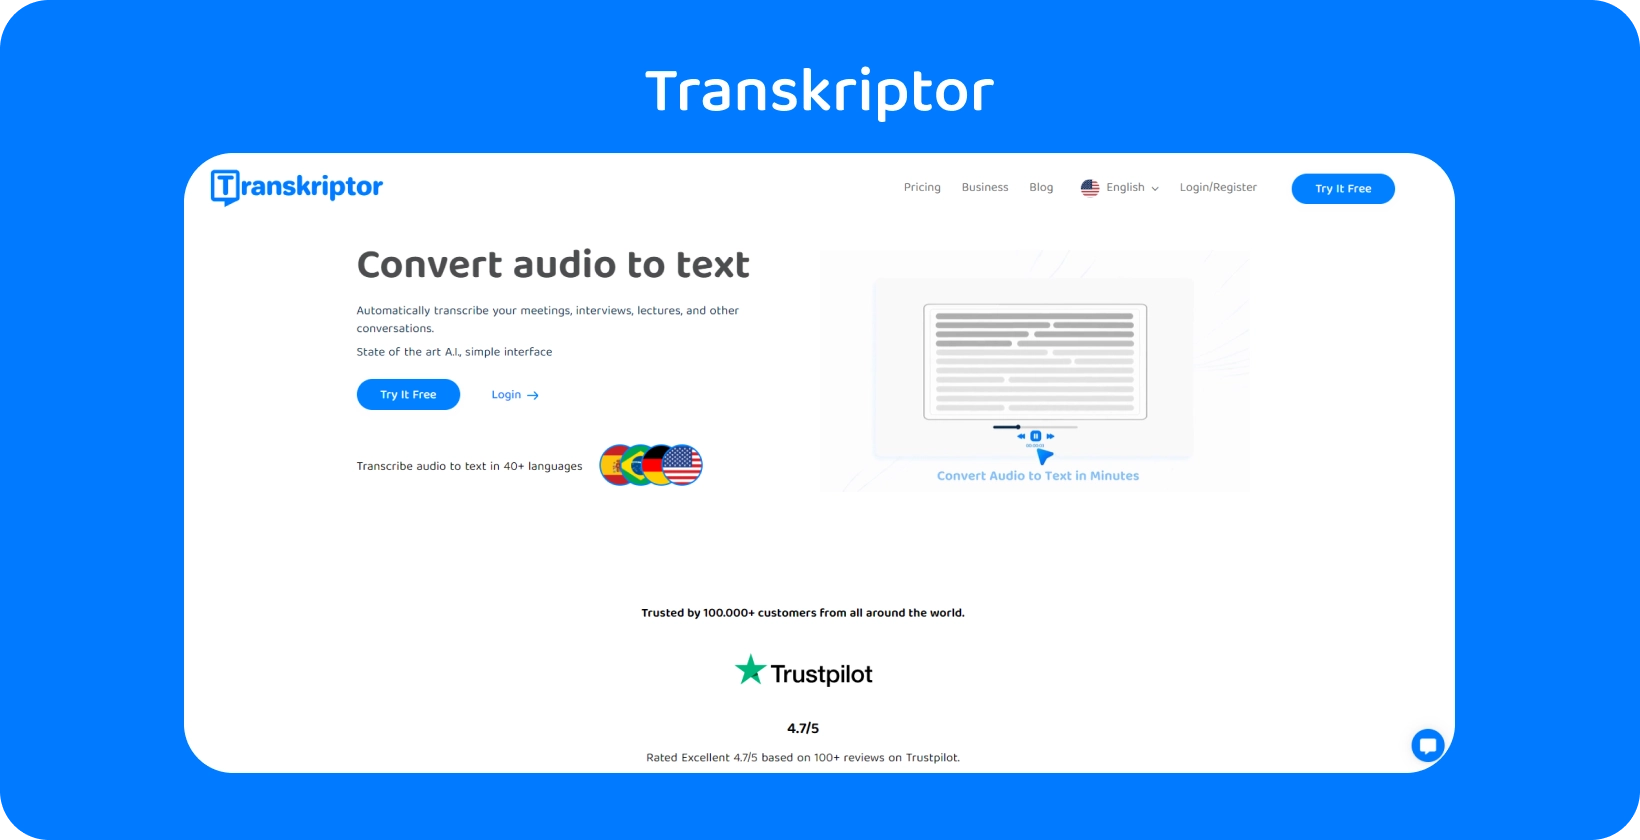 Antarmuka Transkriptor menampilkan fitur asisten rapat, menyederhanakan transkripsi penelitian kualitatif.